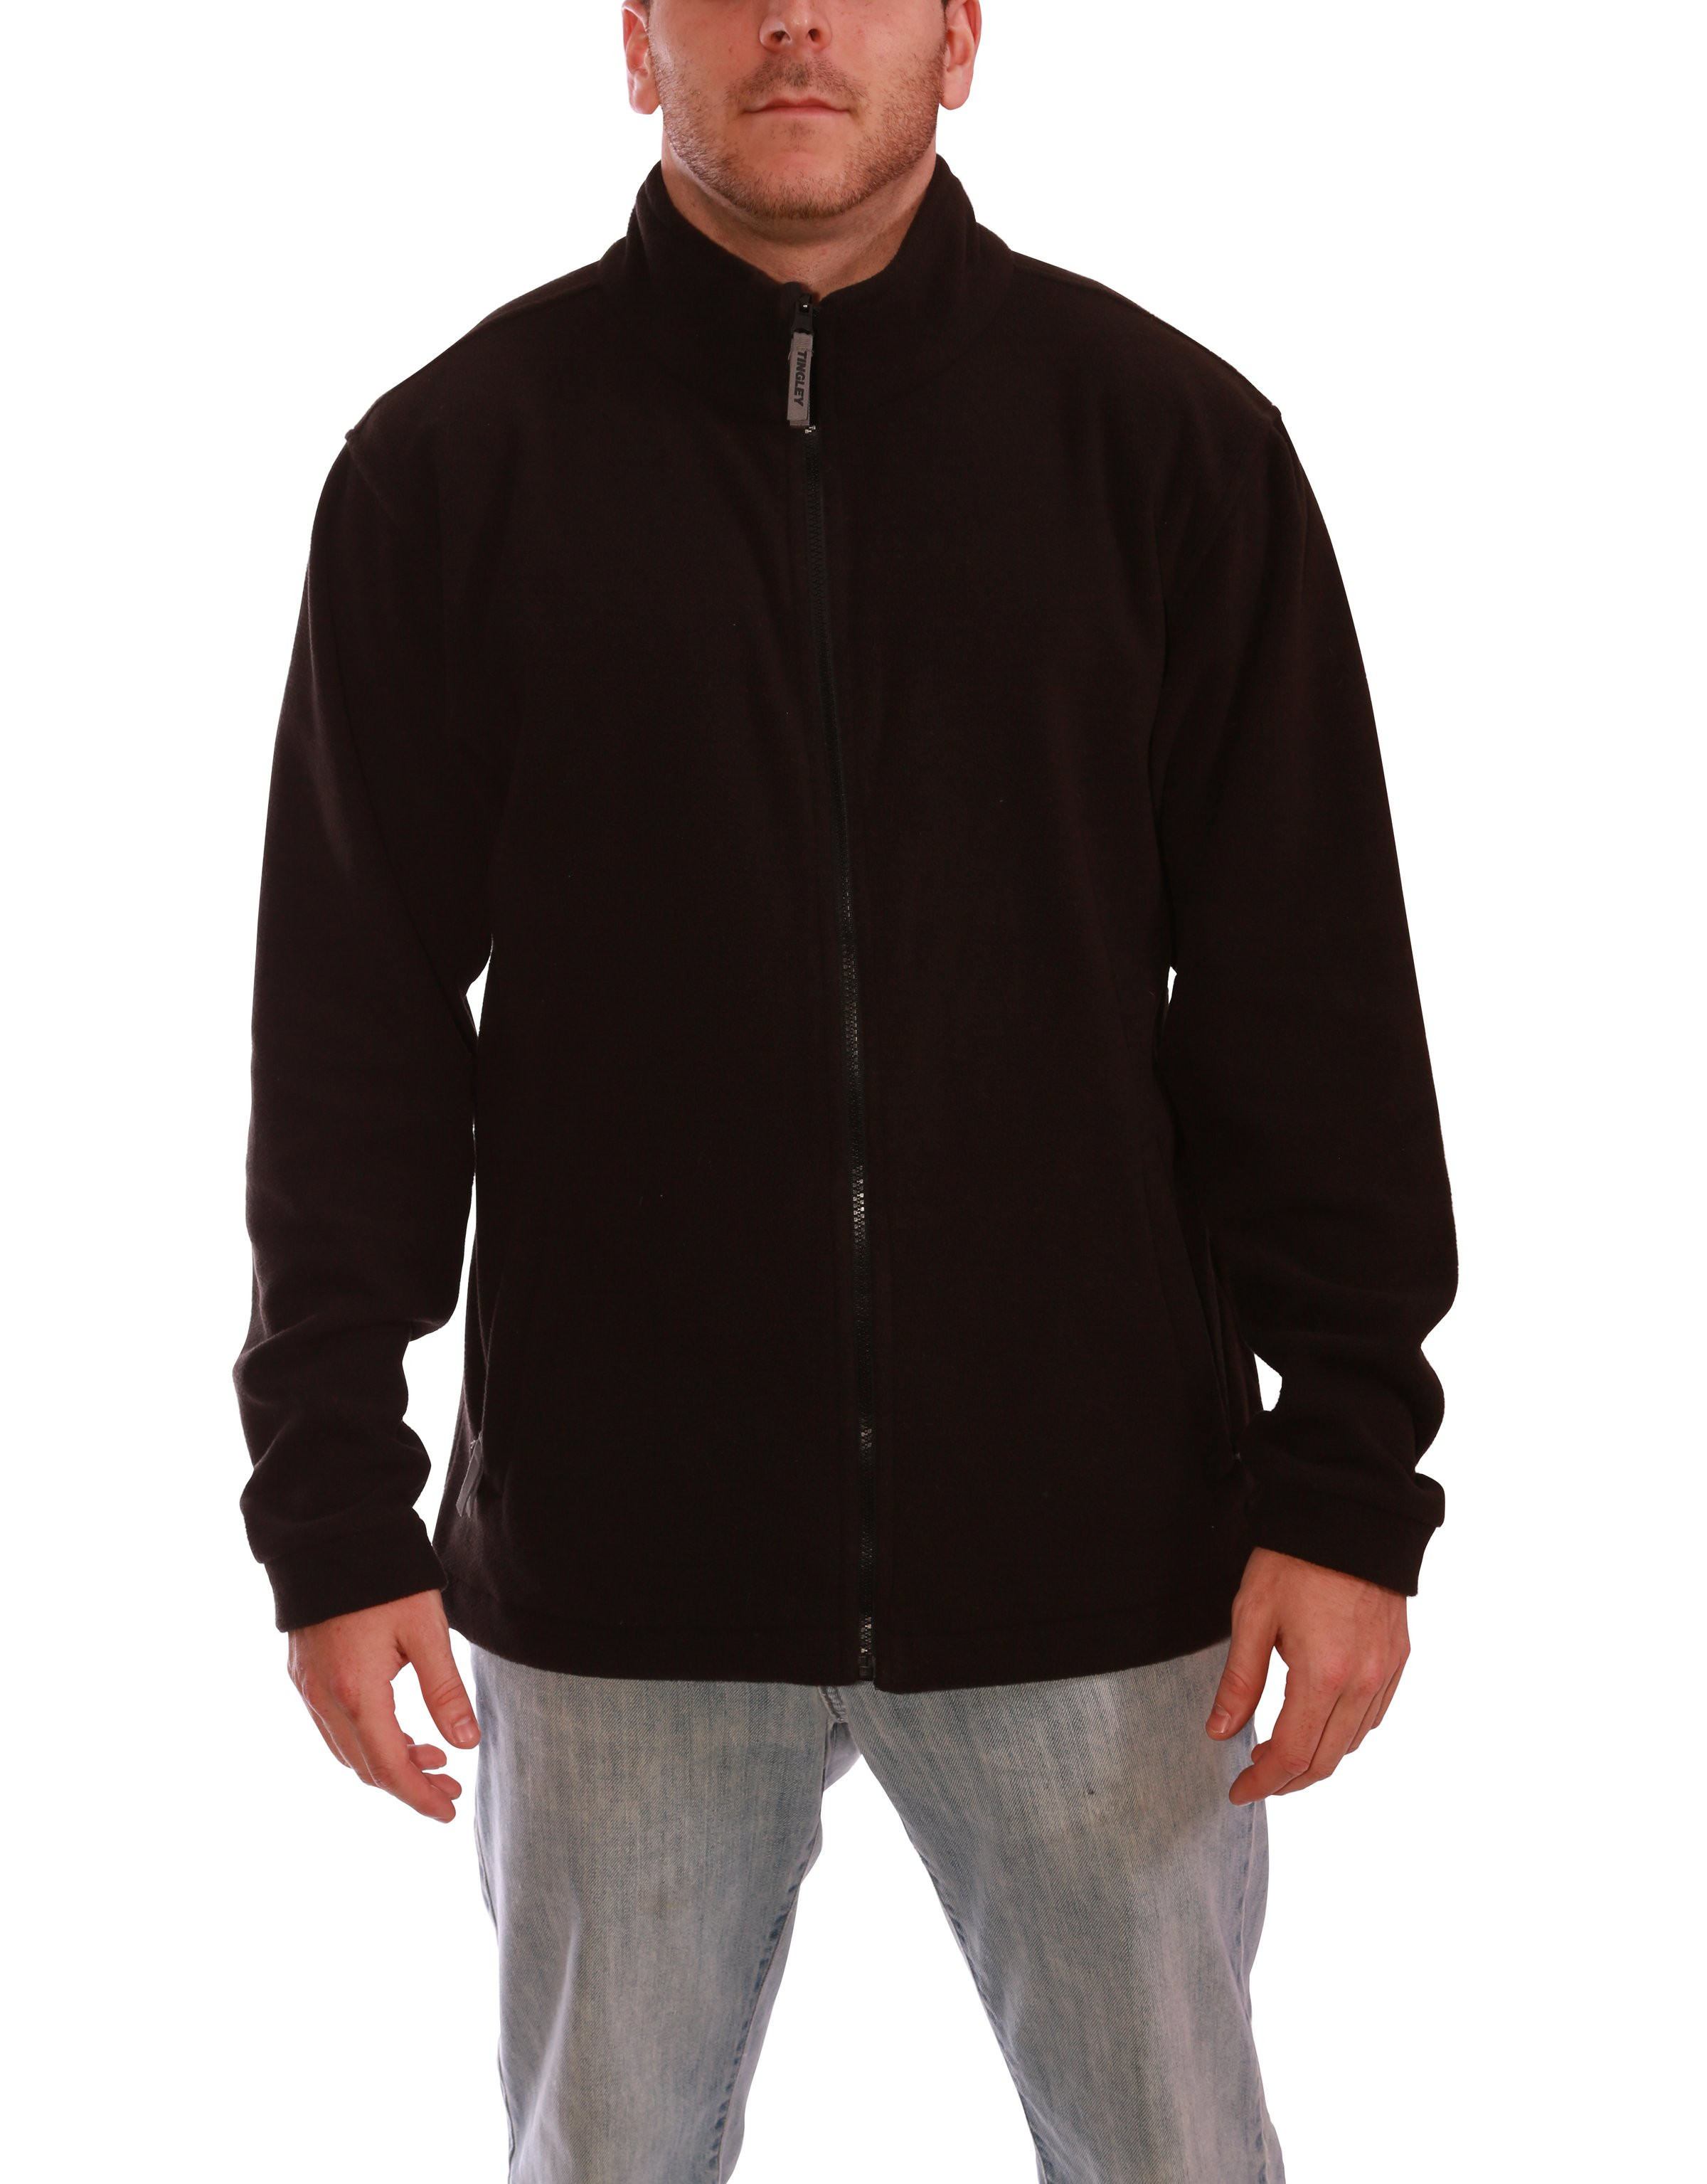 300 Gram Fleece Jacket/Replacement Liner from Tingley